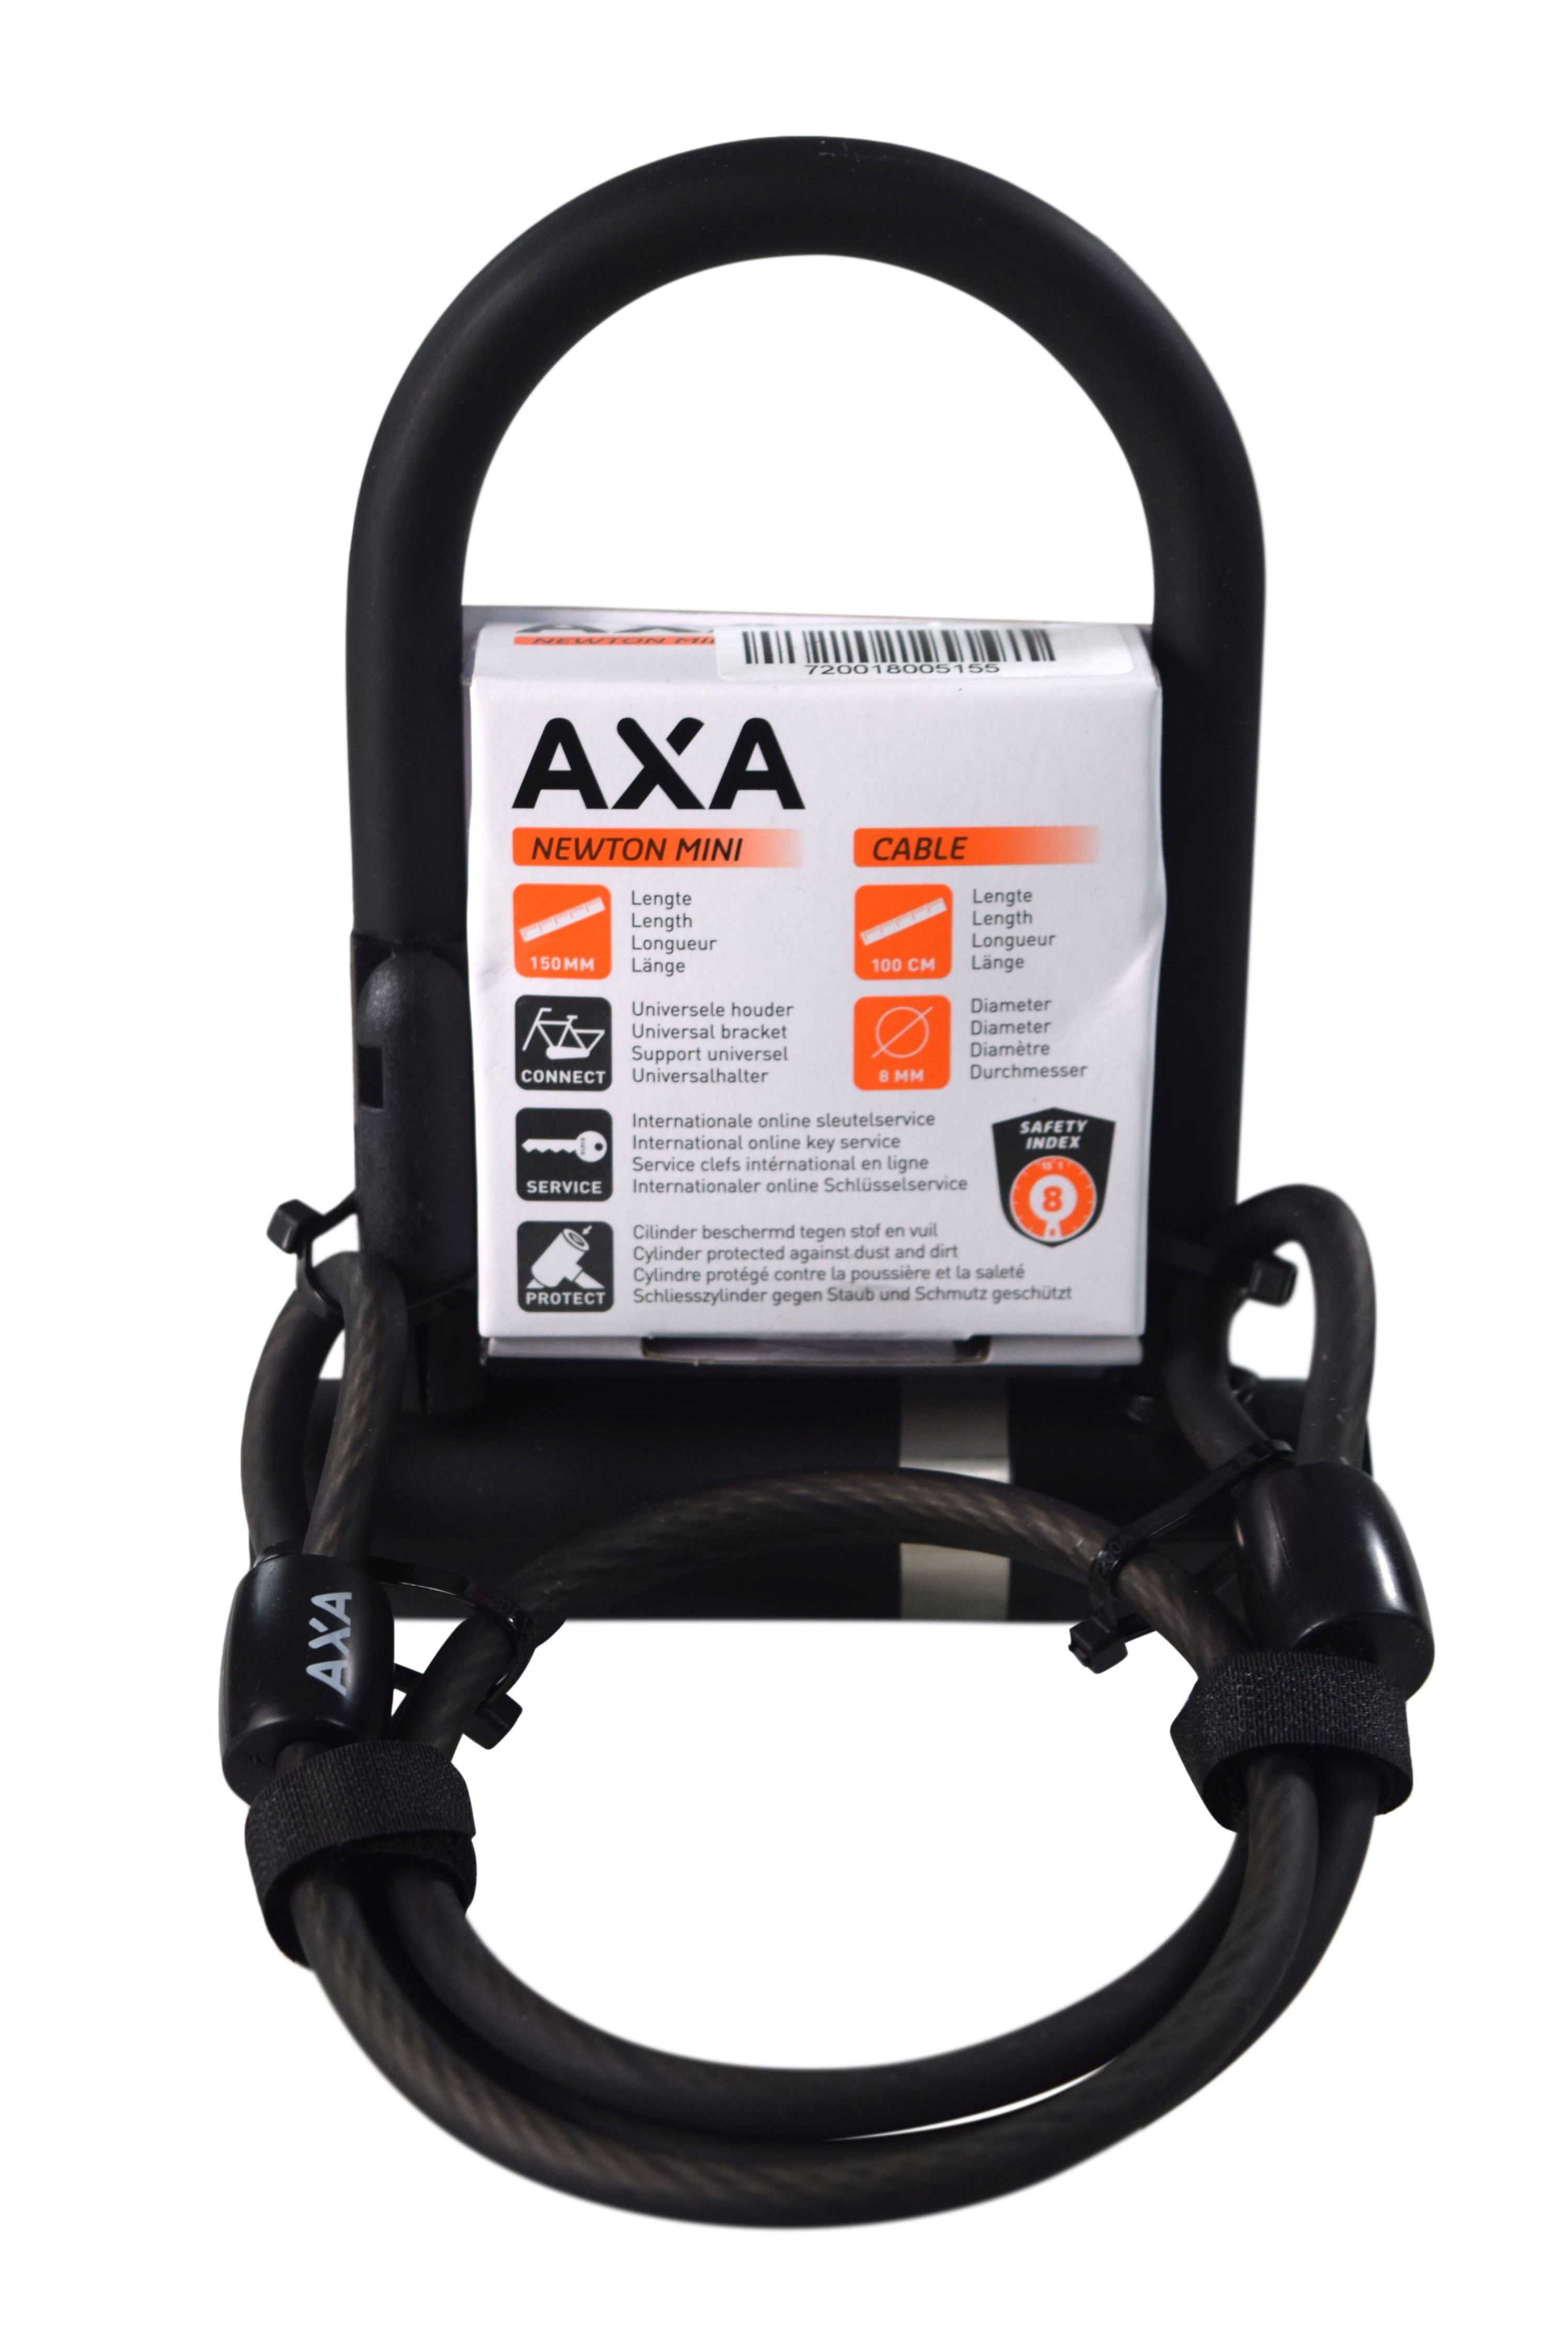 AXA-005155-Newton-Mini-Cable-100-8-image-4